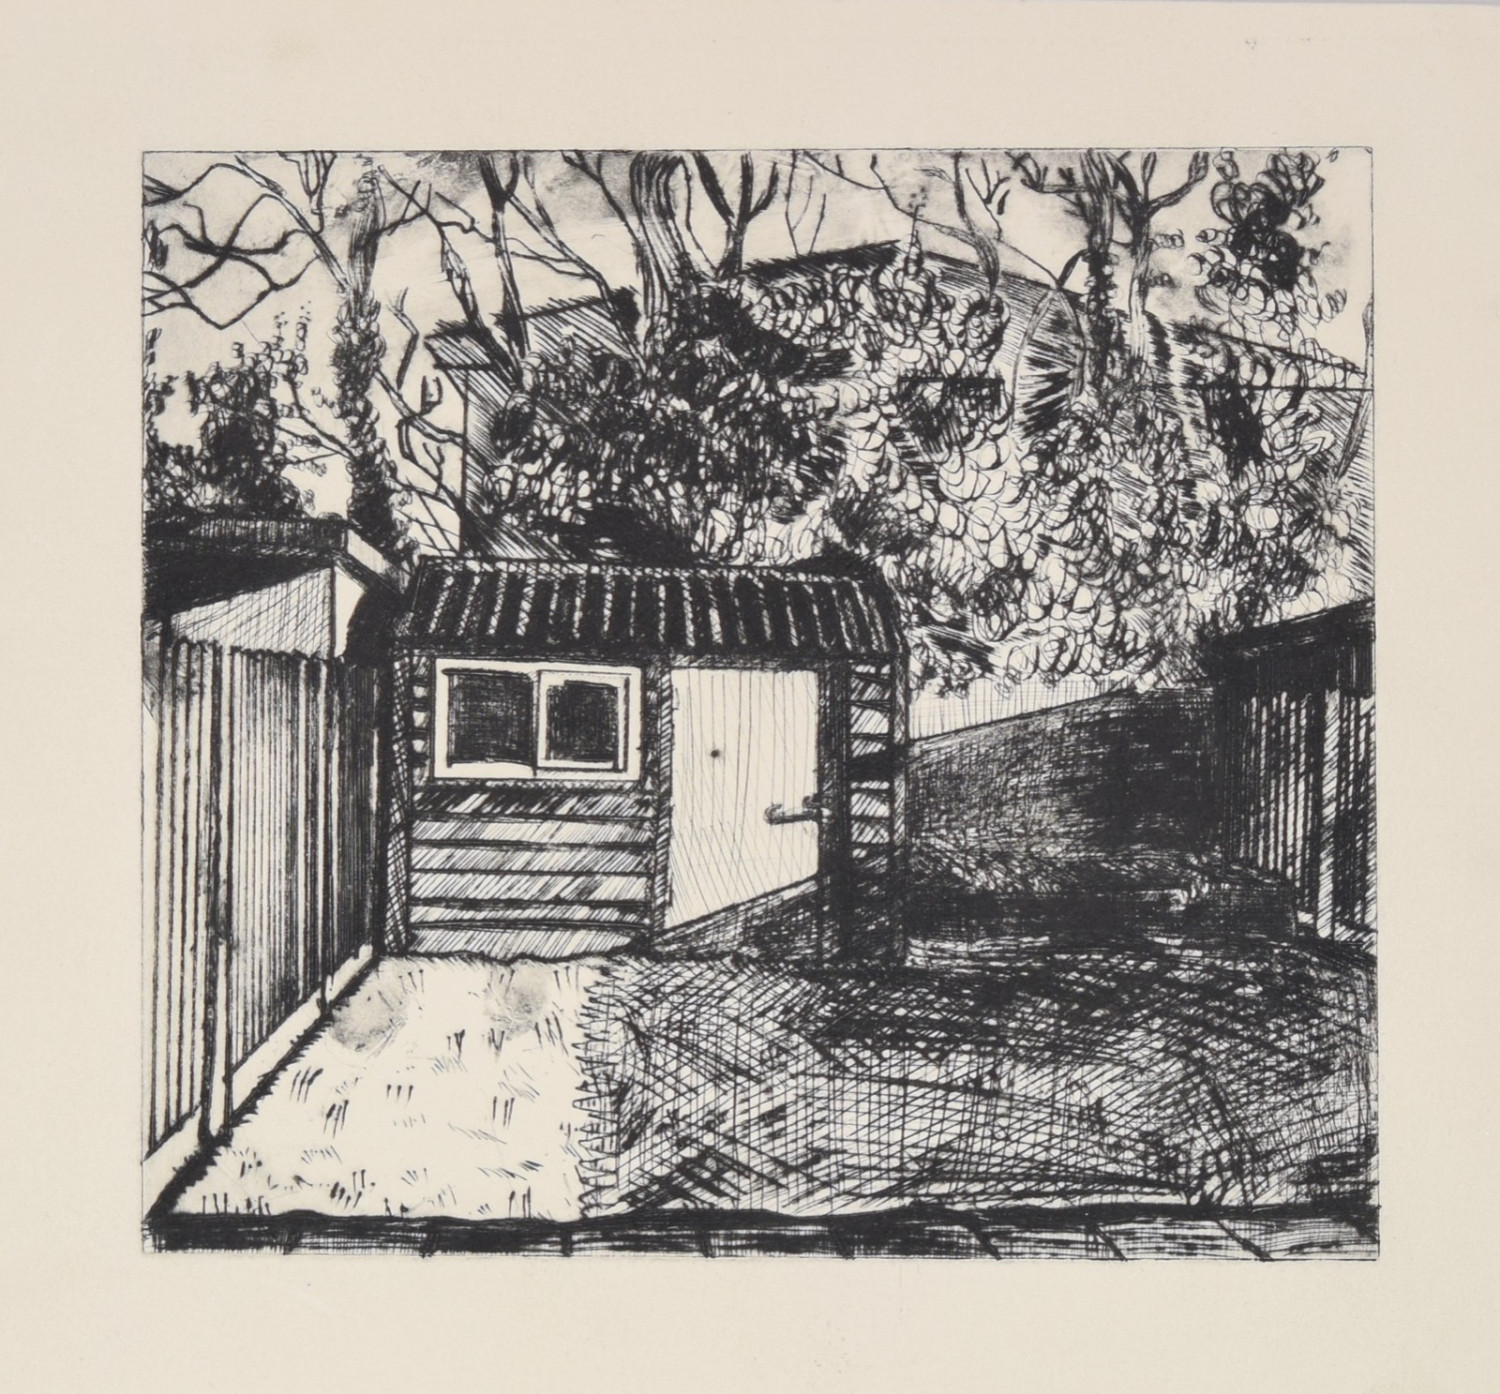 *Navan Garden (Left New York)*, drypoint print, 19.5 x 17.5cm